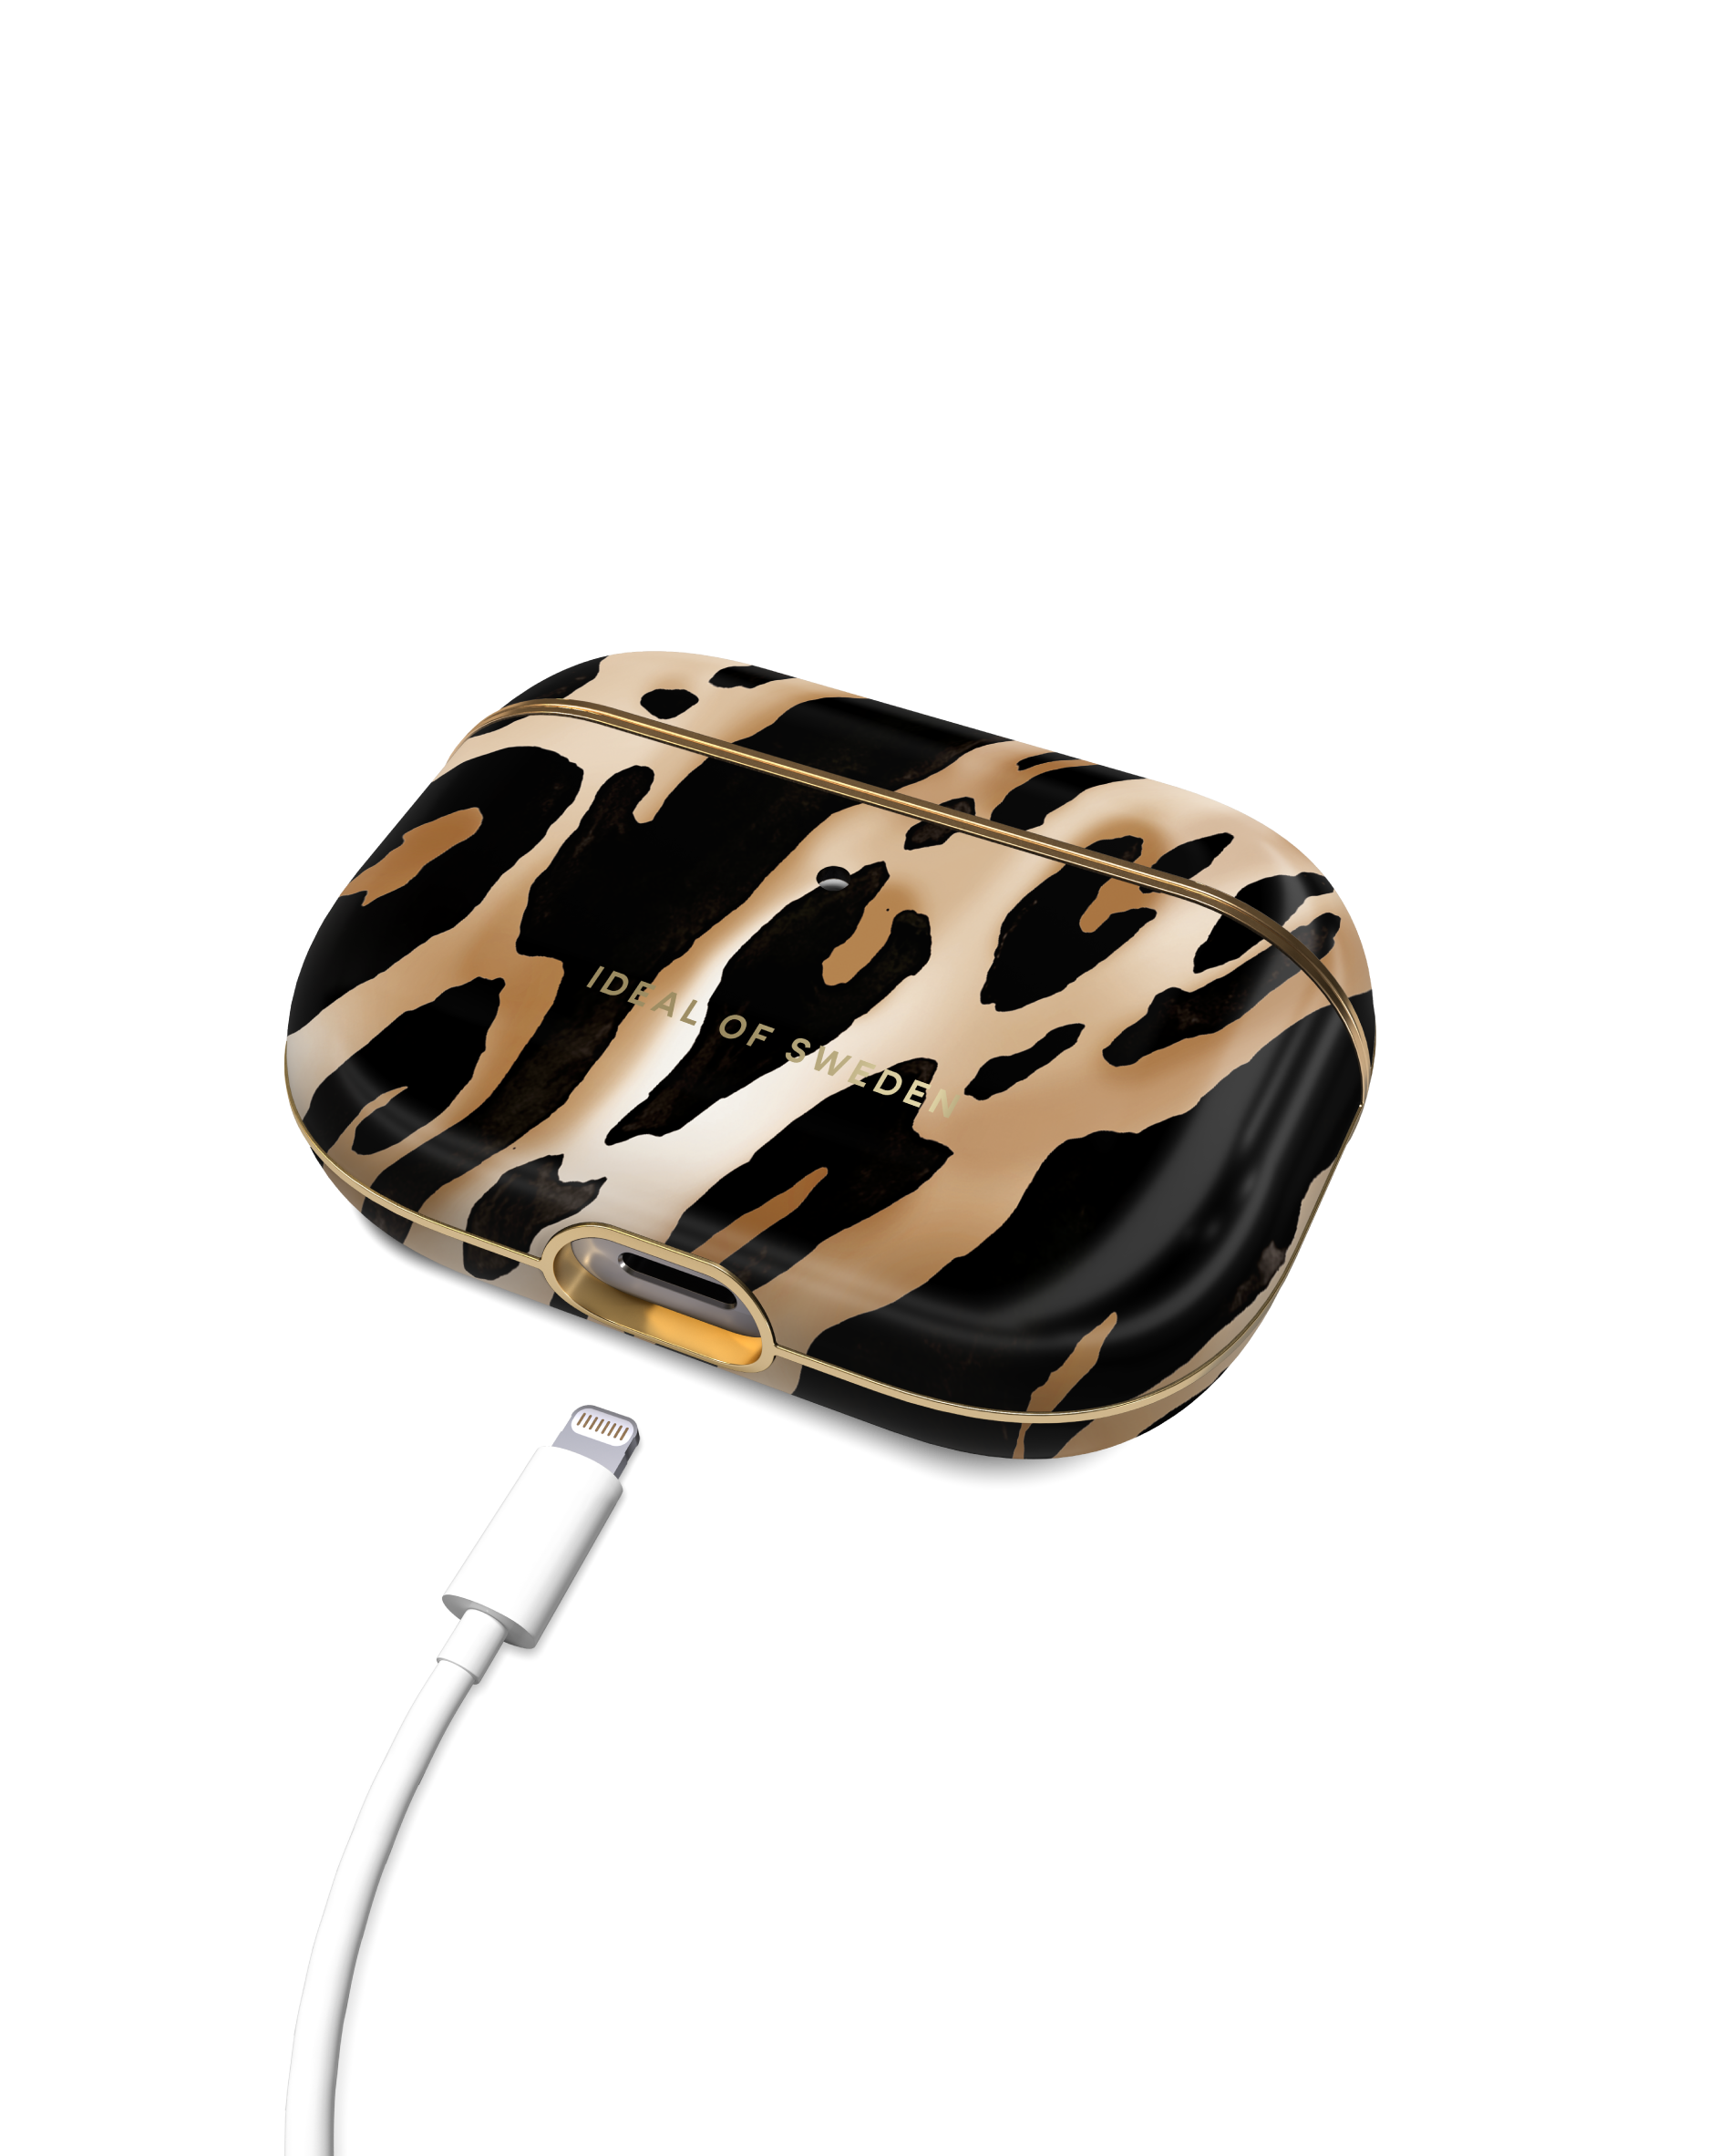 IDEAL OF SWEDEN IDFAPCAW21-PRO-356 Schutzhülle für: Apple passend Leopard Iconic